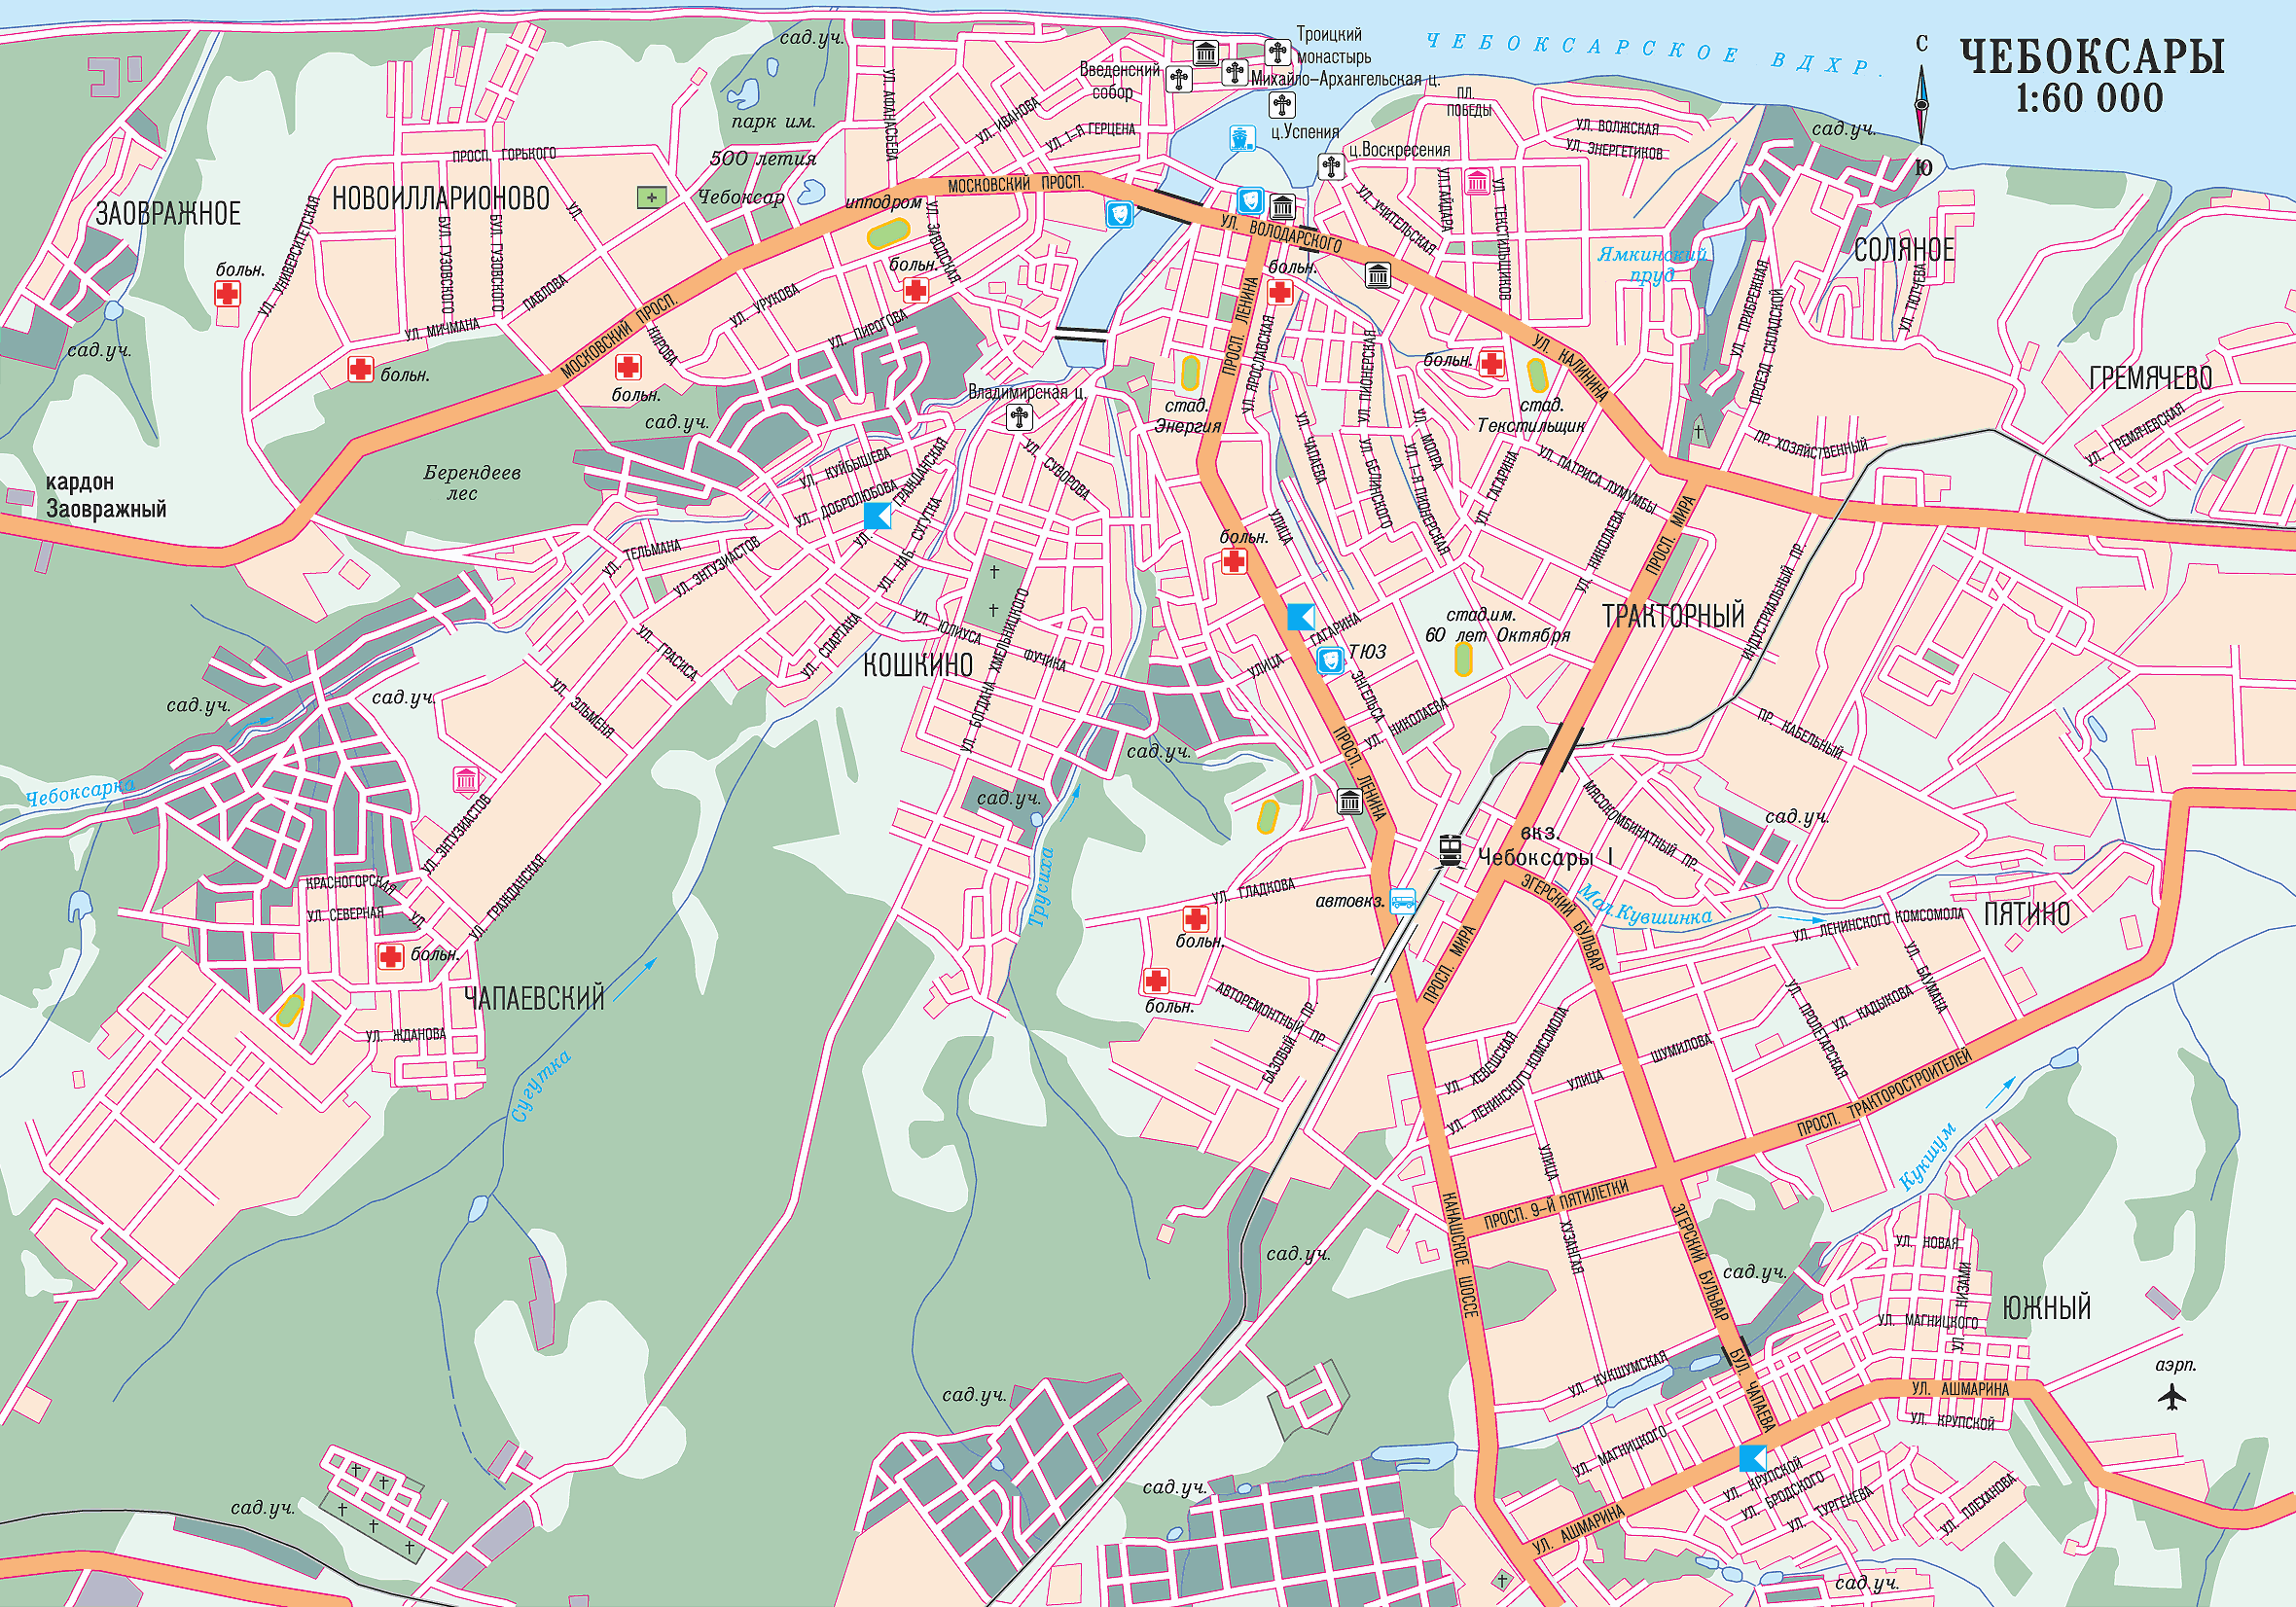 Map of Cheboksary